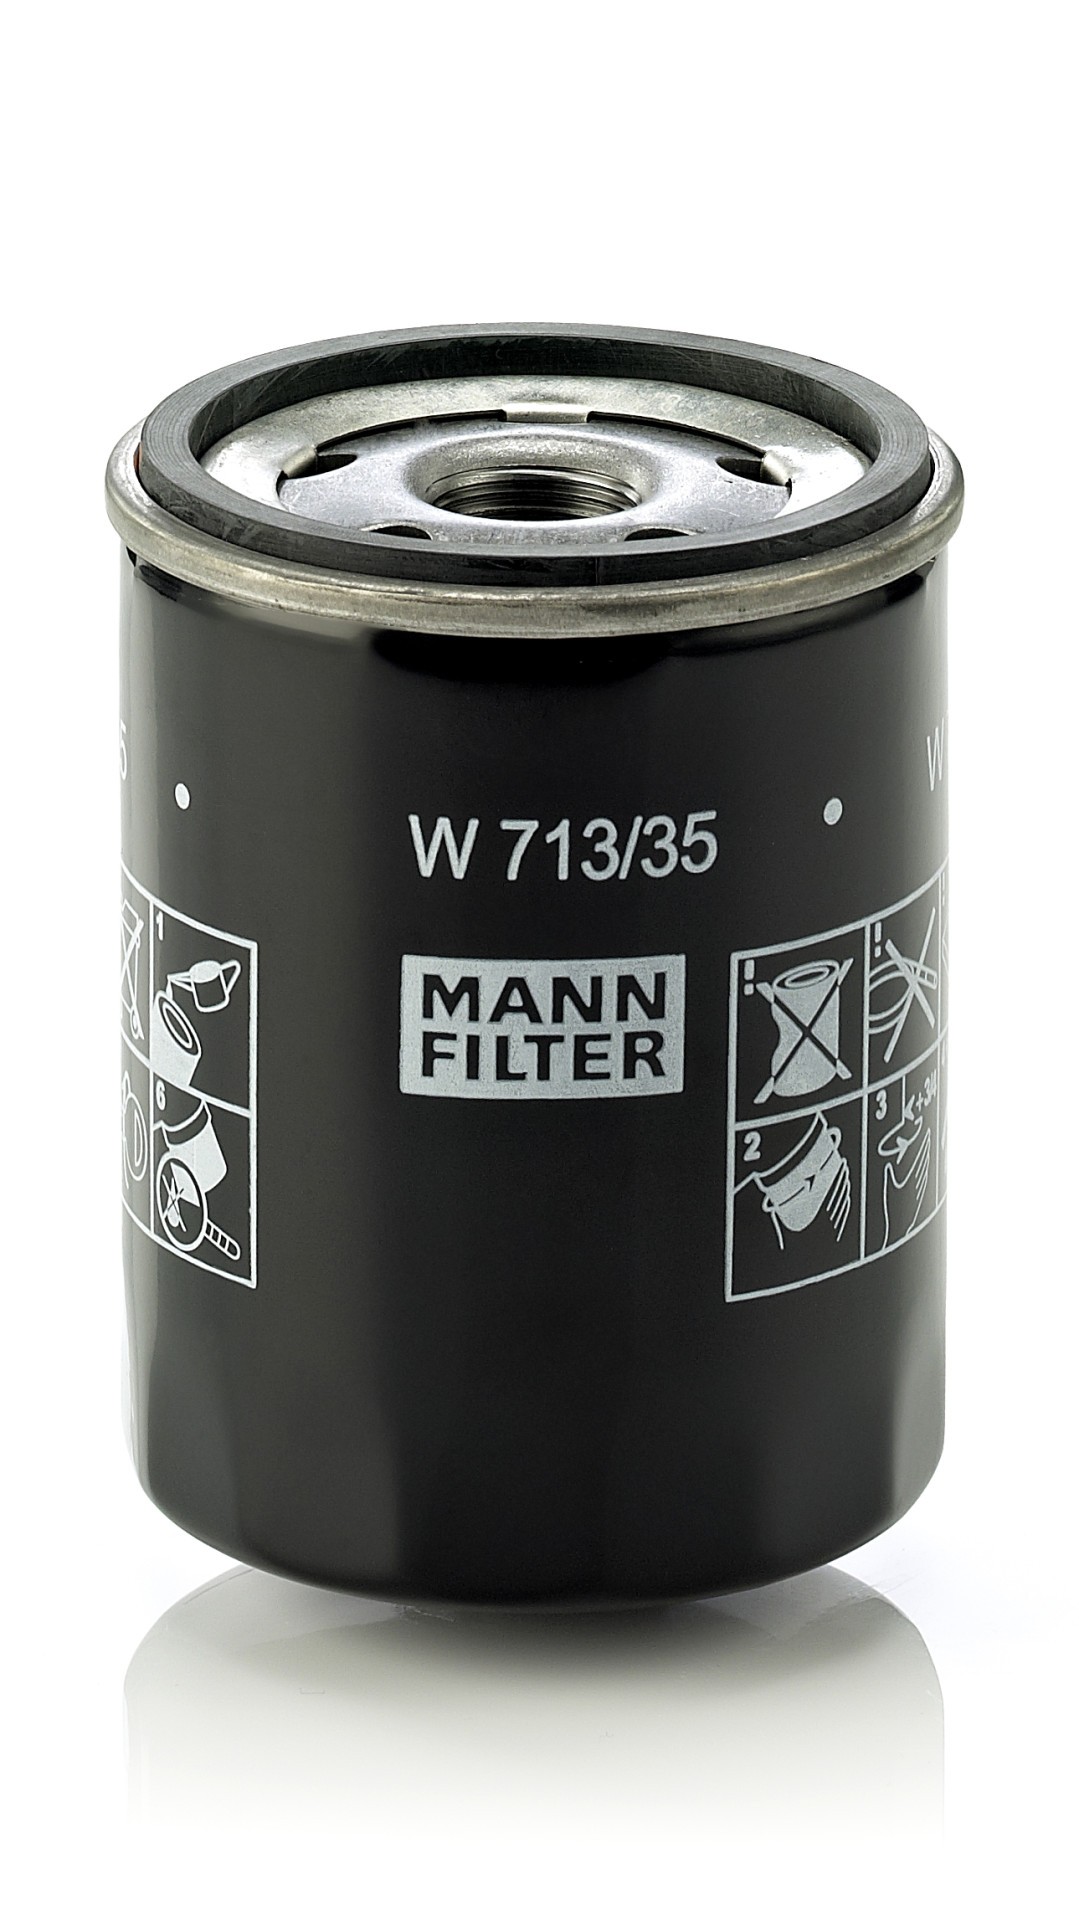 MANN-FILTER lfilter, Art.-Nr. W 713/35